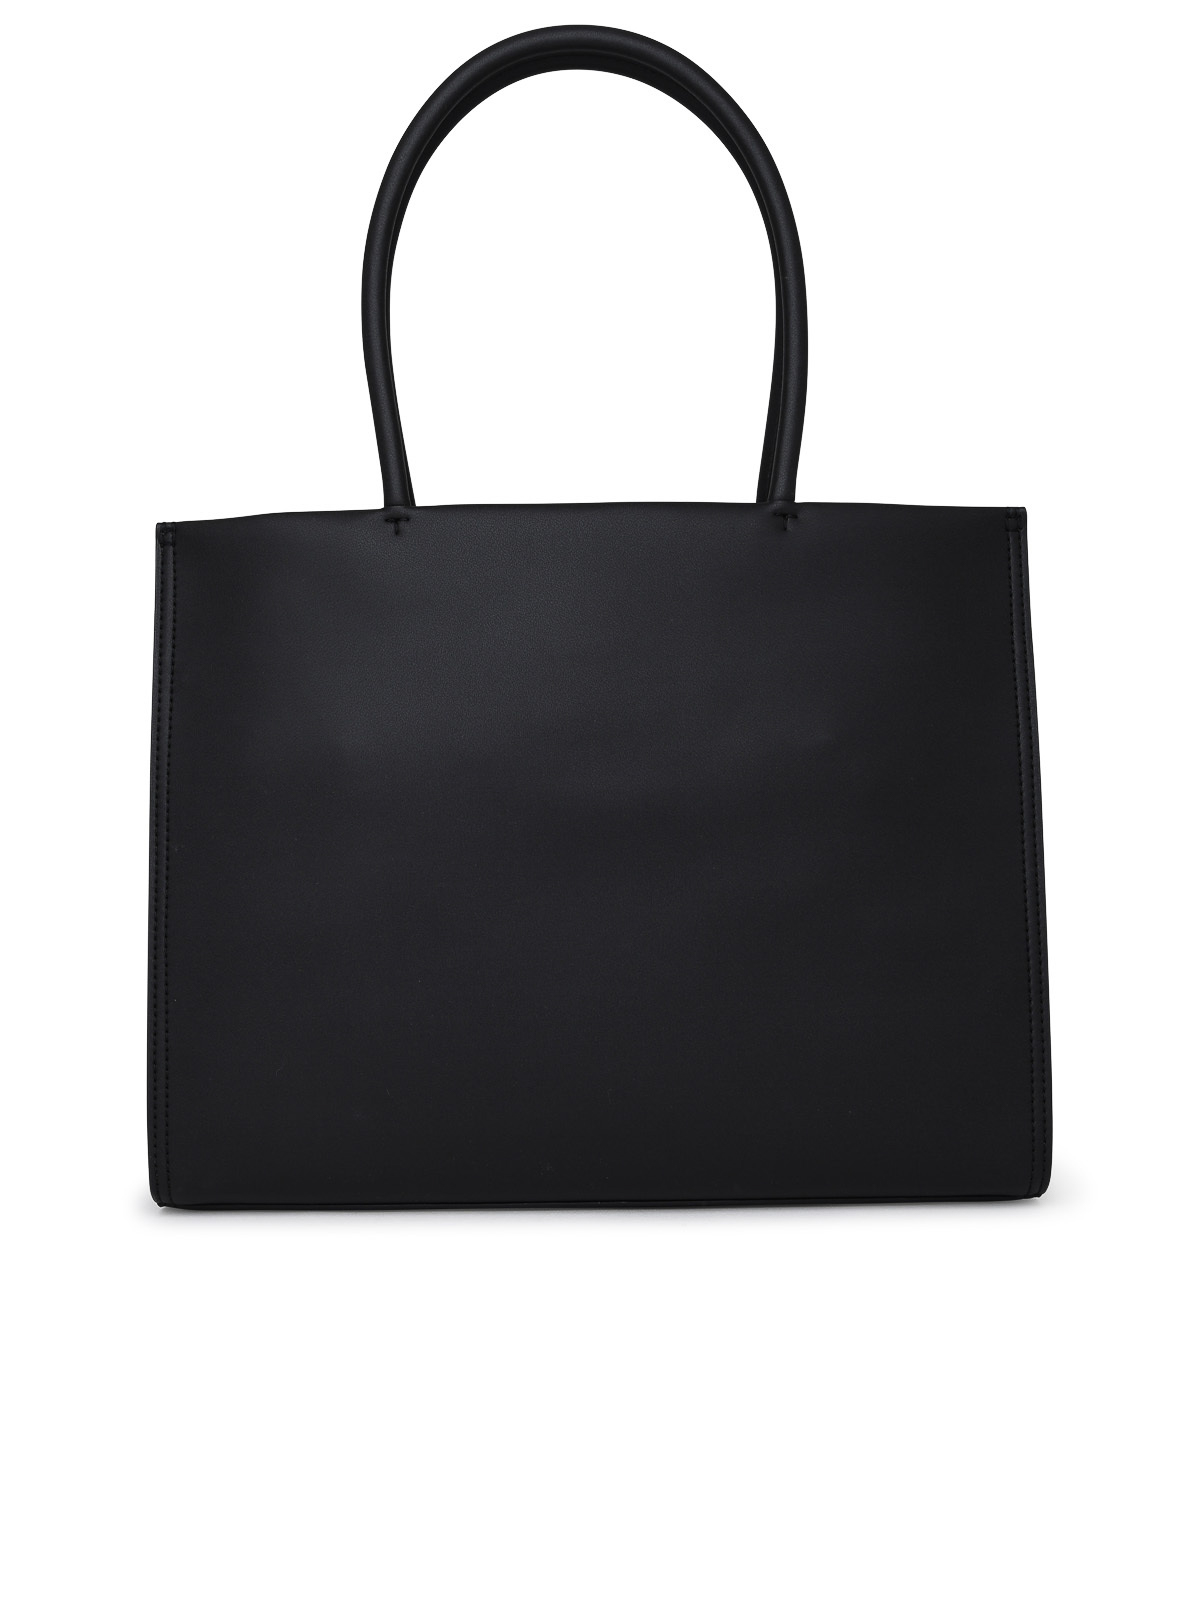 Tory Burch 'Ella' tote bag, Women's Bags